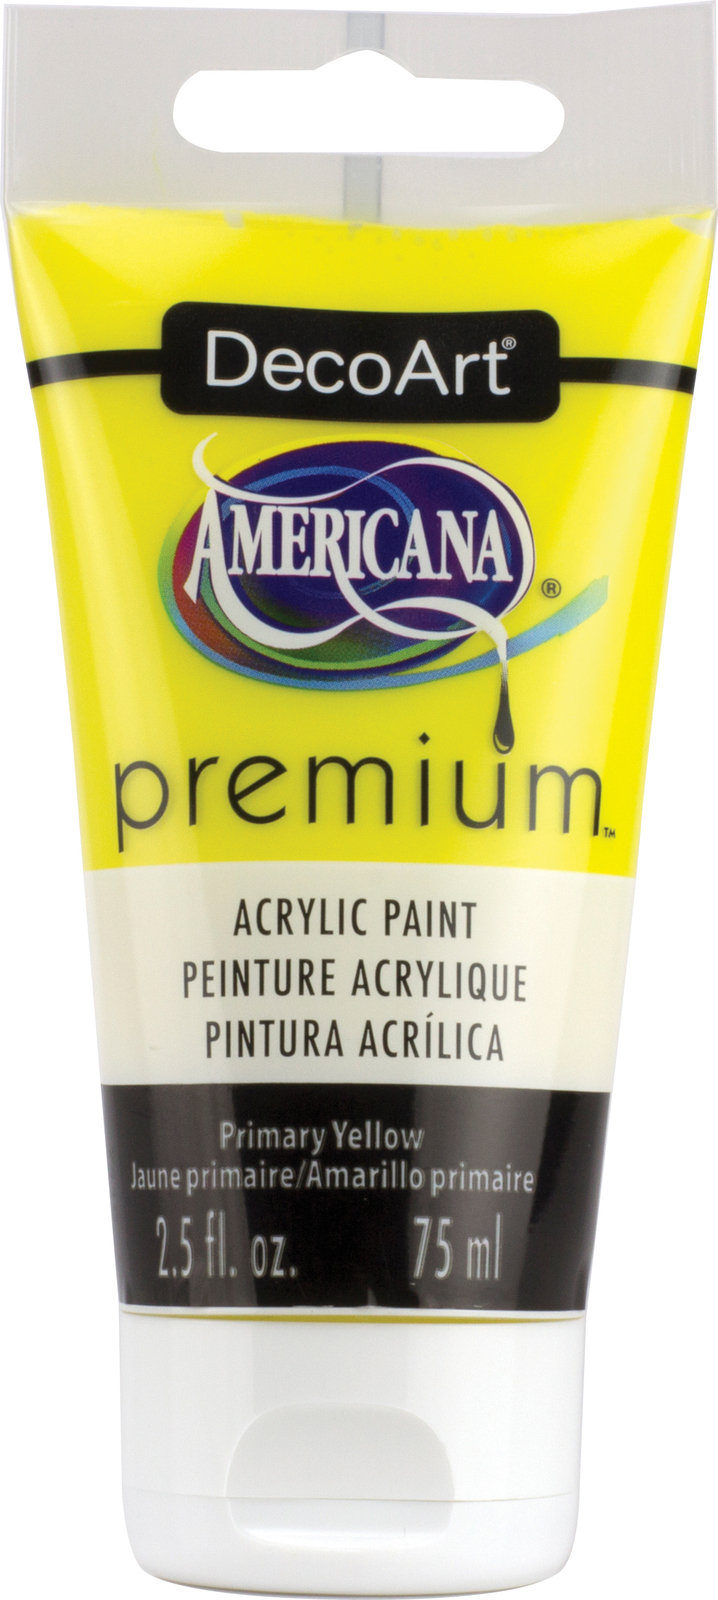 Americana Premium Acrylic Paint Tube 2.5oz Primary Yellow - $21.83